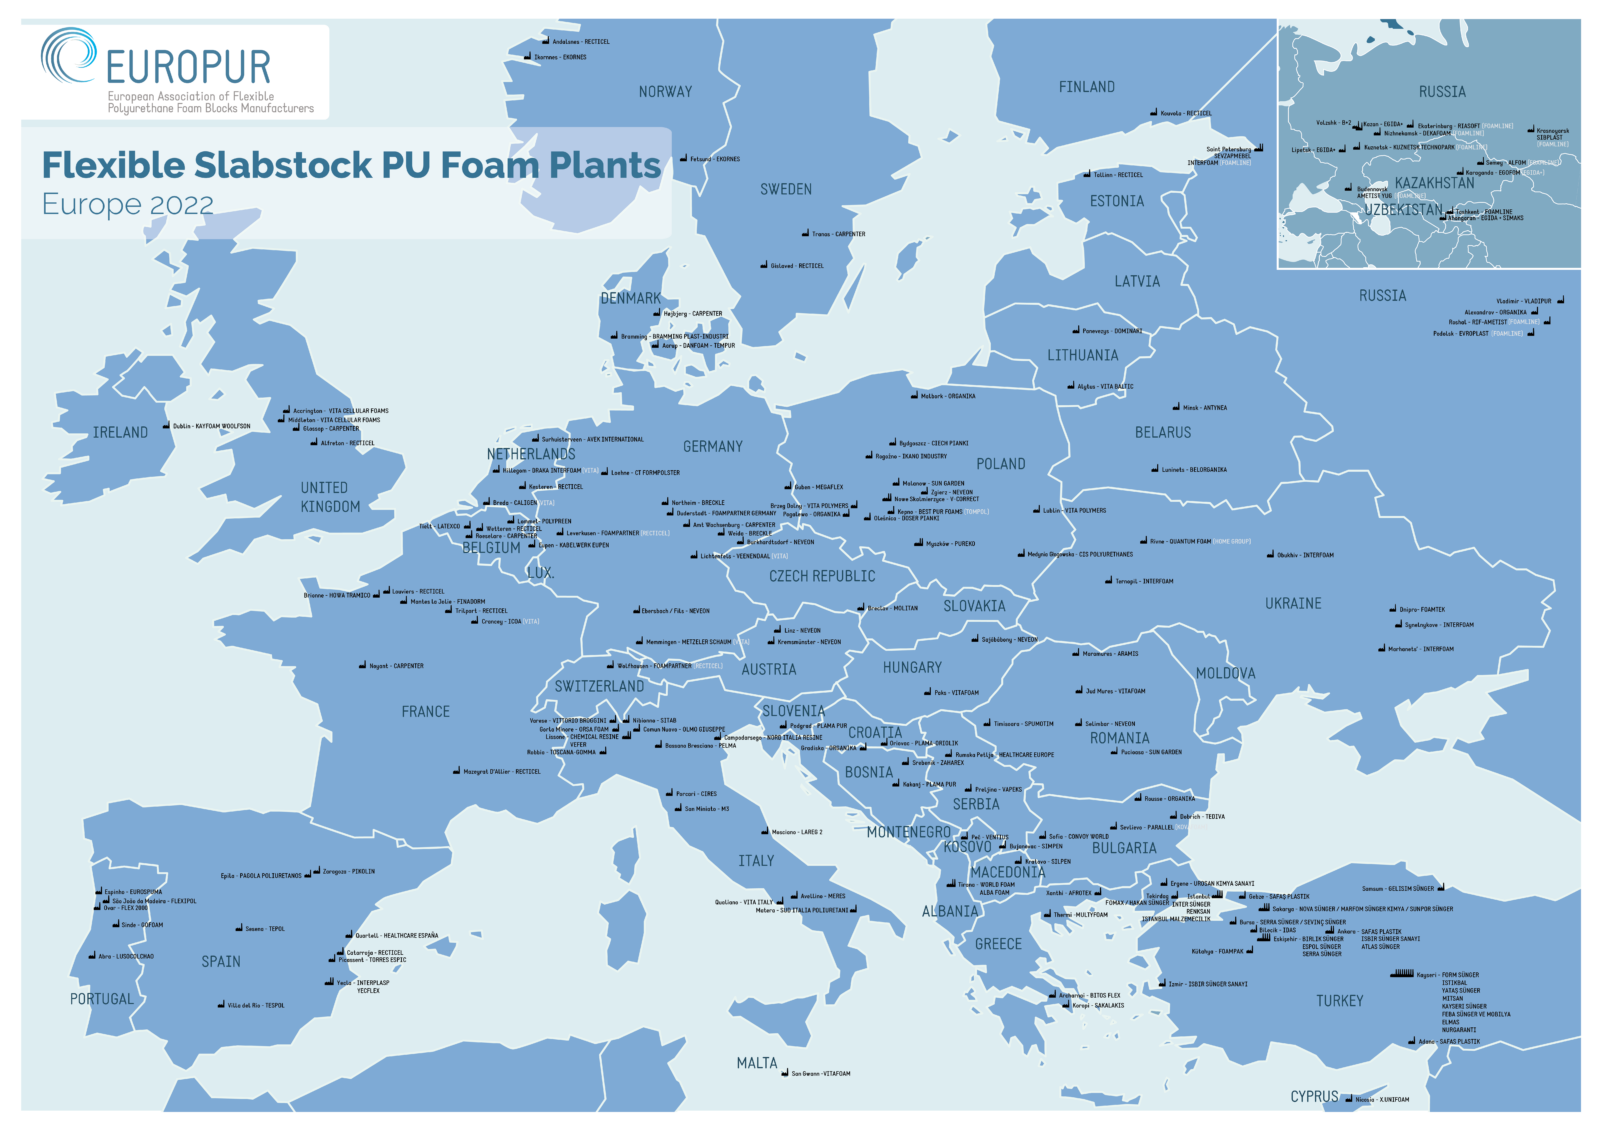 Map of Flexible Slabstock PU Foam Plants - Europe 2022